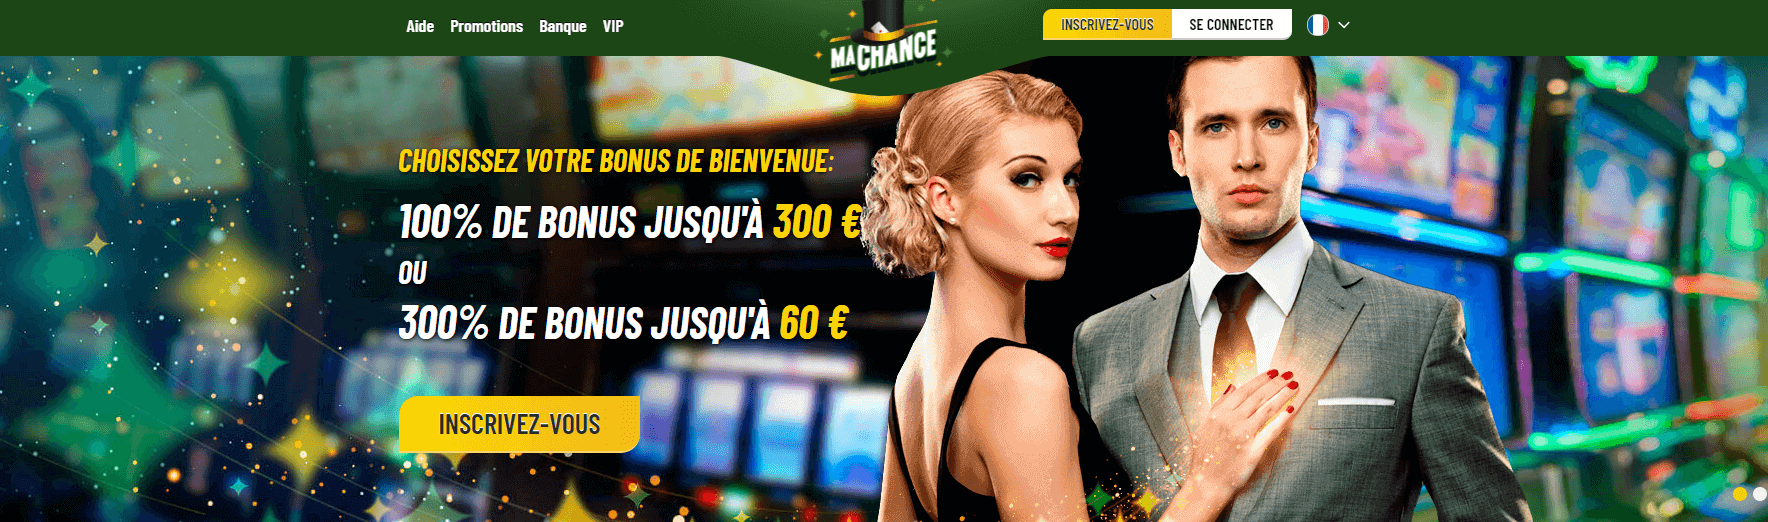 Revue du My Chance Casino France et revue 2022 - 100% de bonus jusqu'à 250€